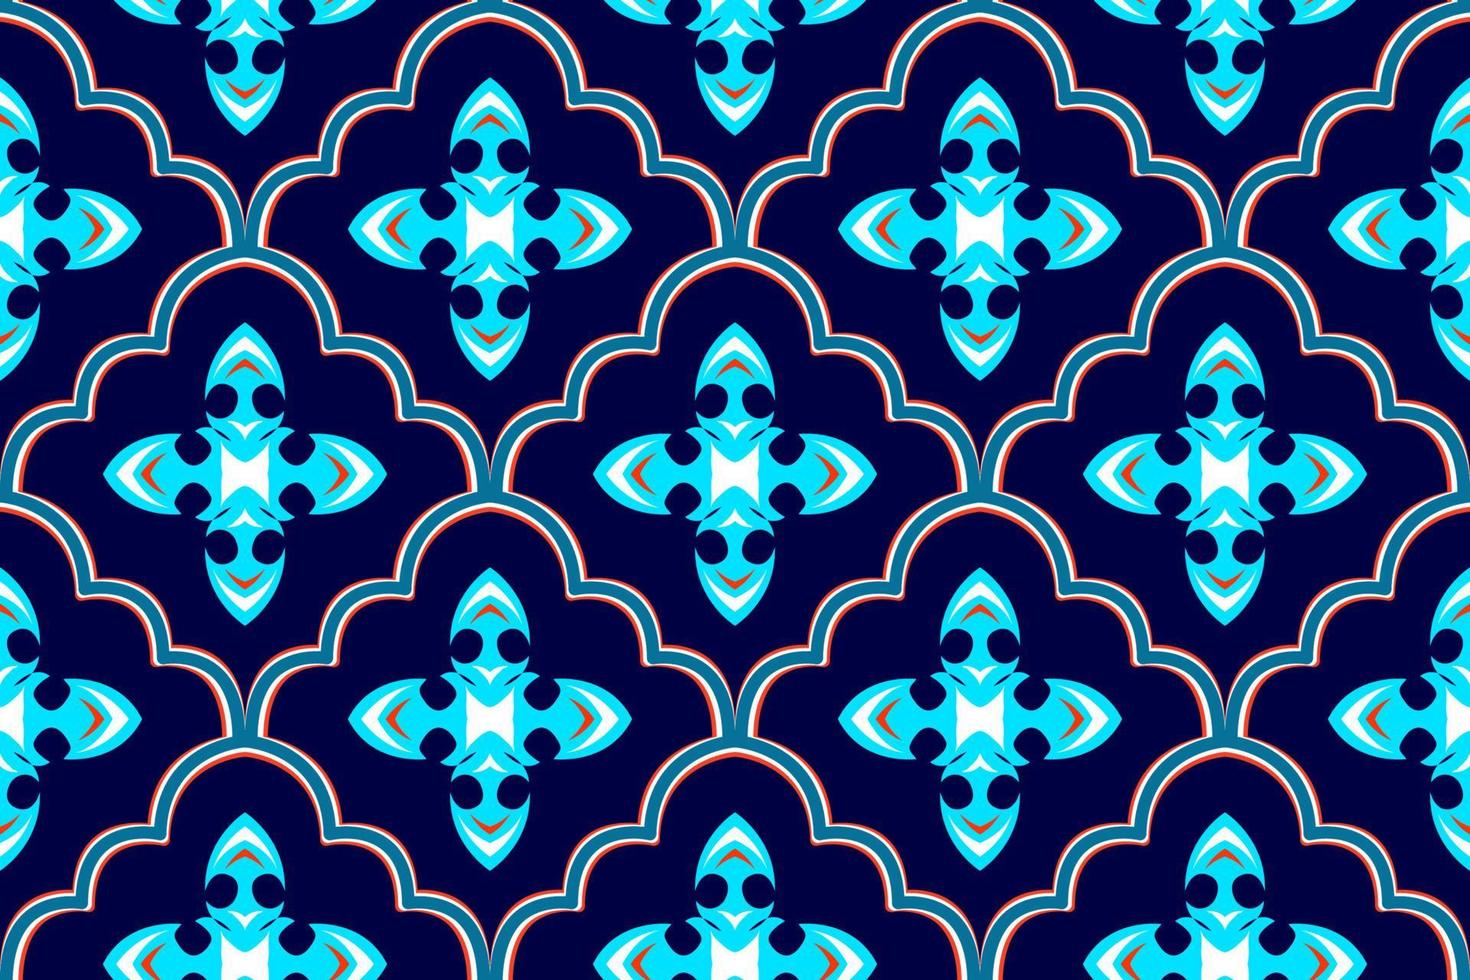 Marokkaans etnisch patroonontwerp. Azteekse stof tapijt mandala ornament inheemse chevron textiel decoratie behang. tribal turkije afrikaanse indische traditionele borduurwerk vector illustraties achtergrond